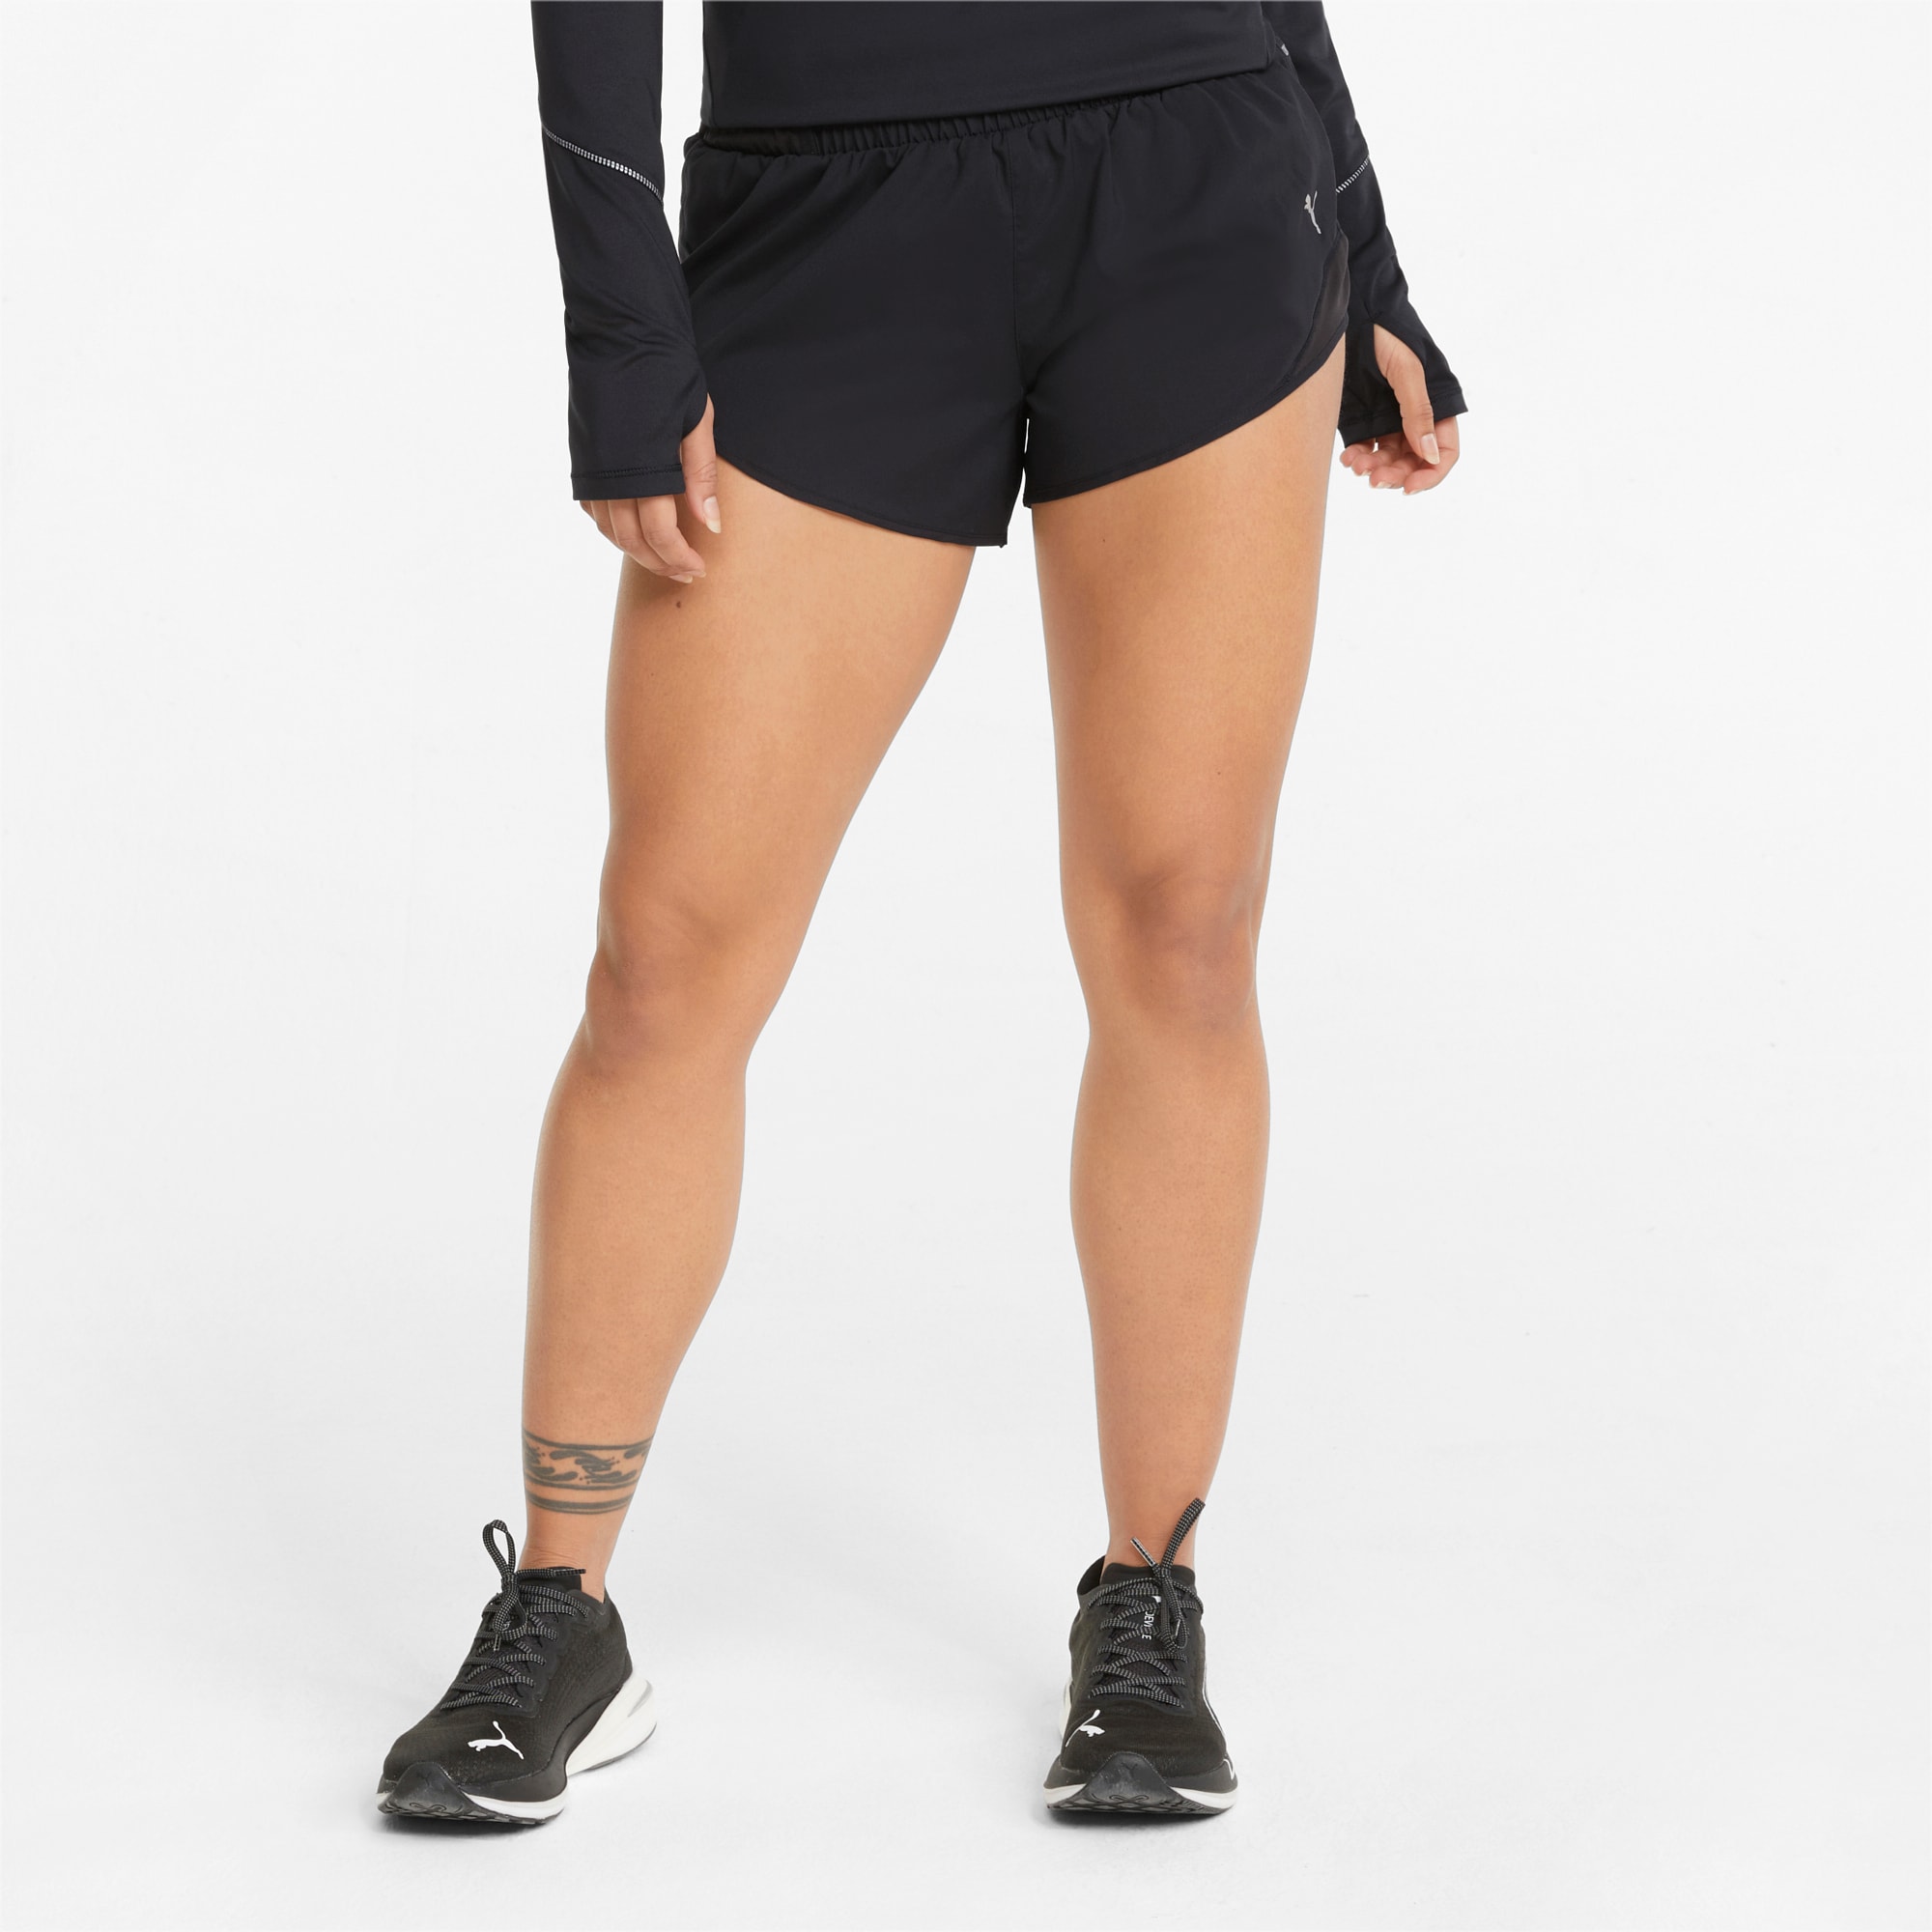 puma womens running shorts